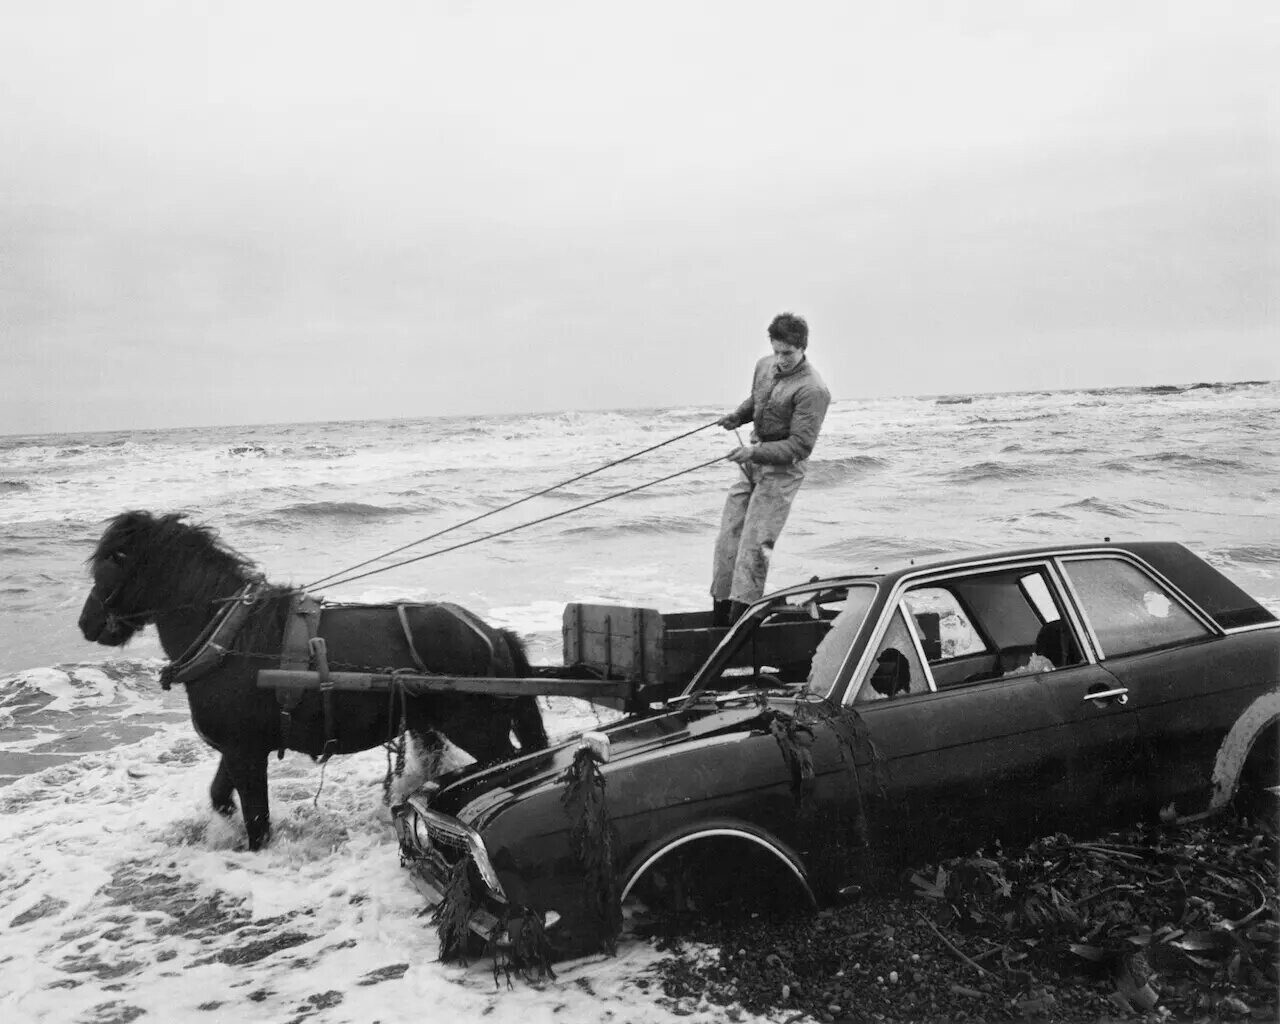 Автомобиль, брошенный на пляже, 1982 год. Фотограф Крис Киллип